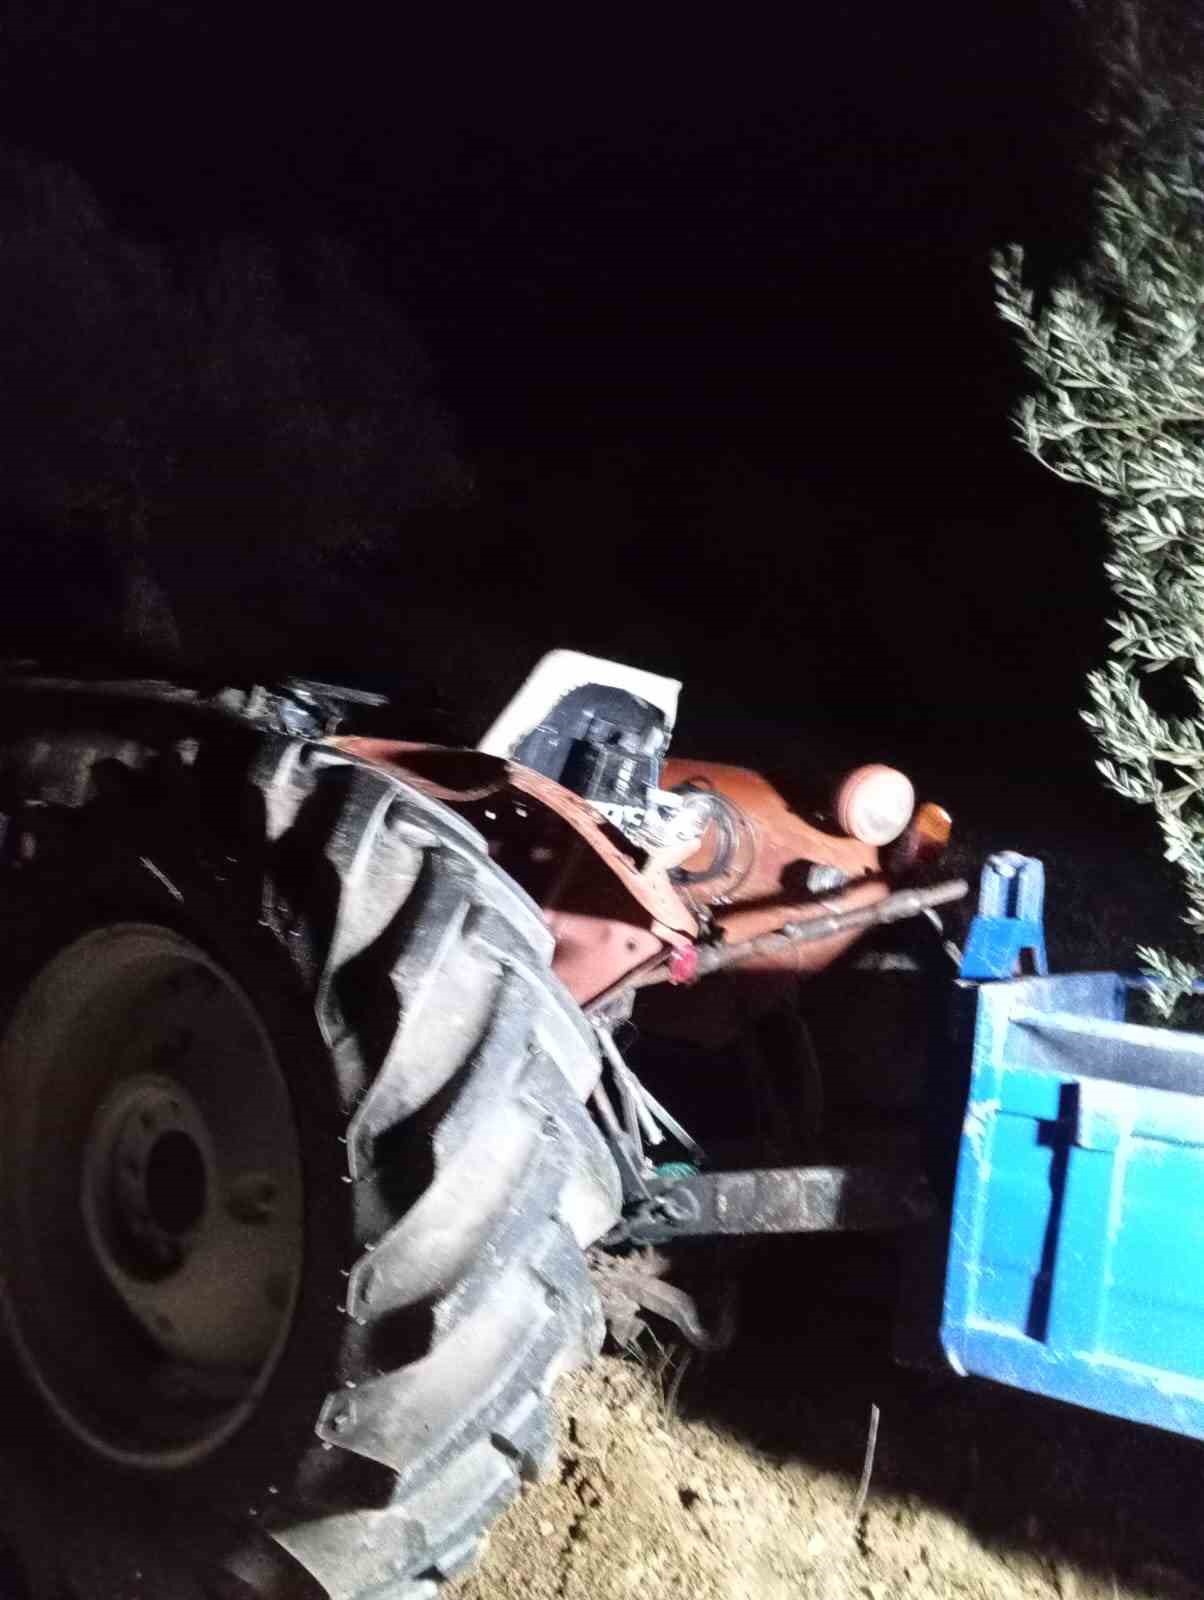 ucuruma yuvarlanan traktorun altinda kalarak hayatini kaybetti 5 2UbkhUQ8